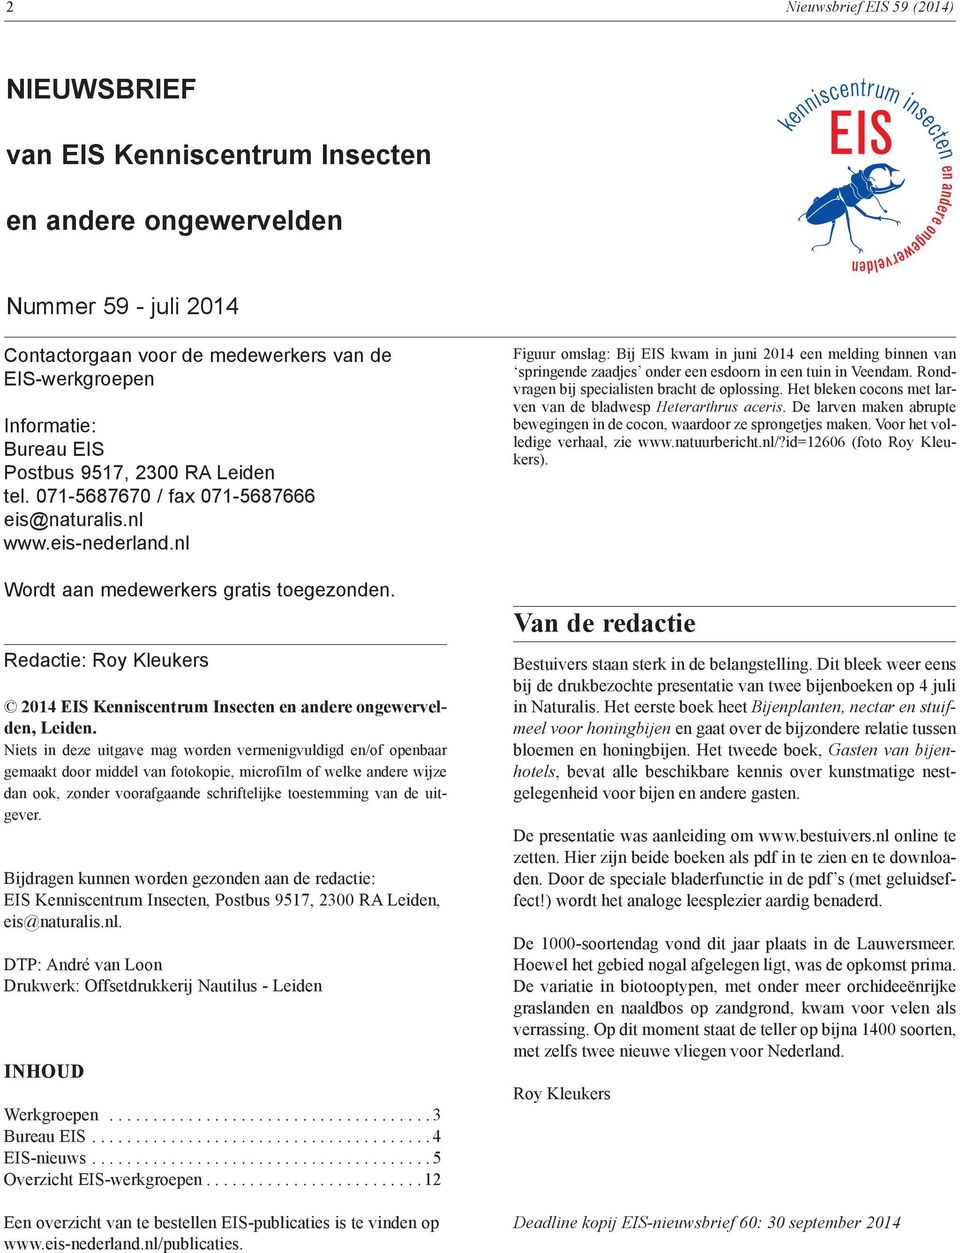 Redactie: 2014 EIS Kenniscentrum Insecten en andere ongewervelden, Leiden.